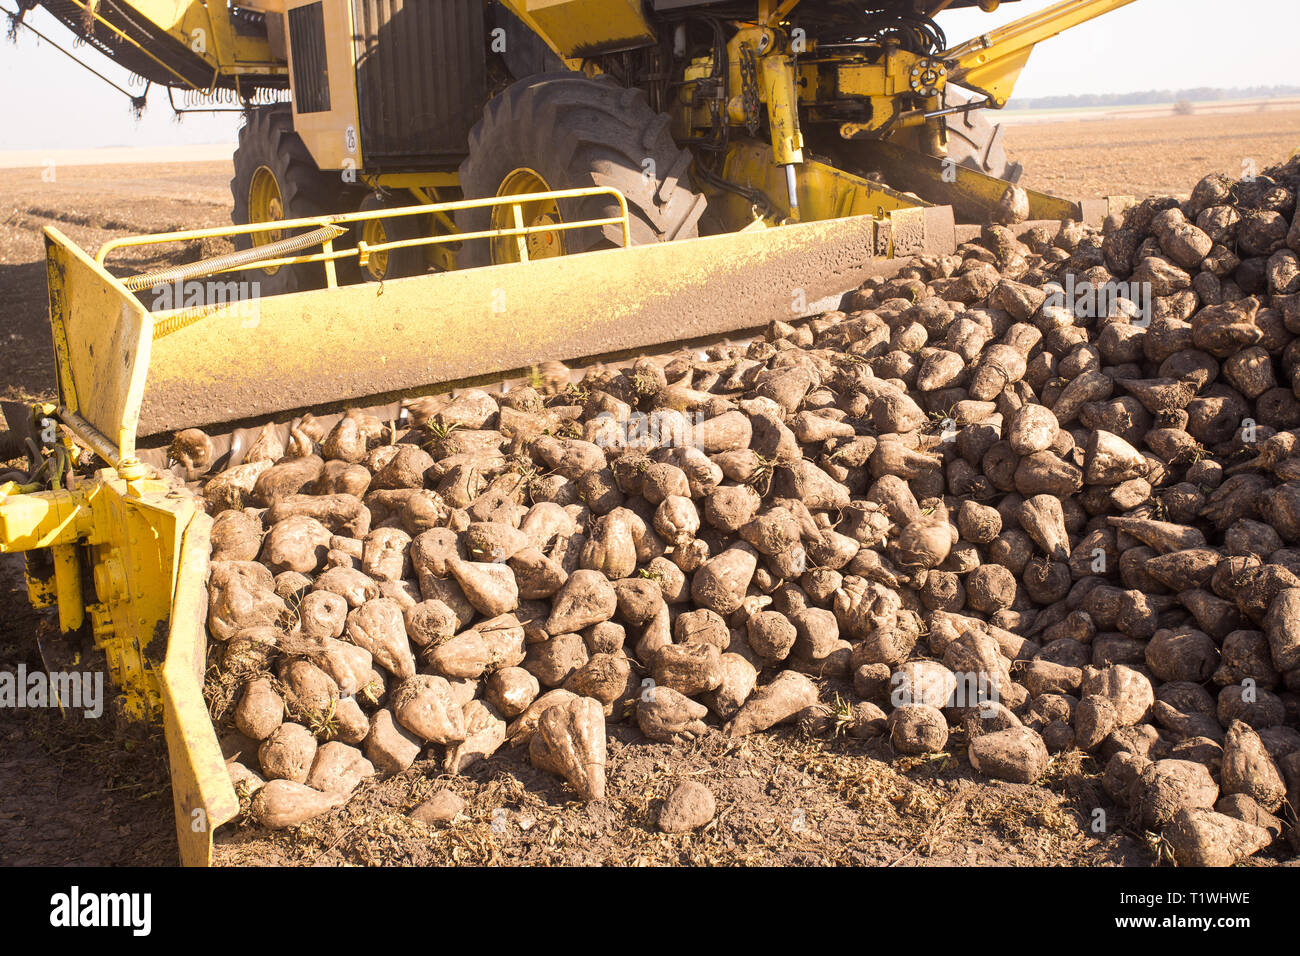 Das Thema der Landwirtschaft outdoor. Eine gelbe Lader Transporte Zuckerrüben, Getreide zu einem Lkw in einem Feld an einem sonnigen Tag vor einem blauen Himmel. Stockfoto